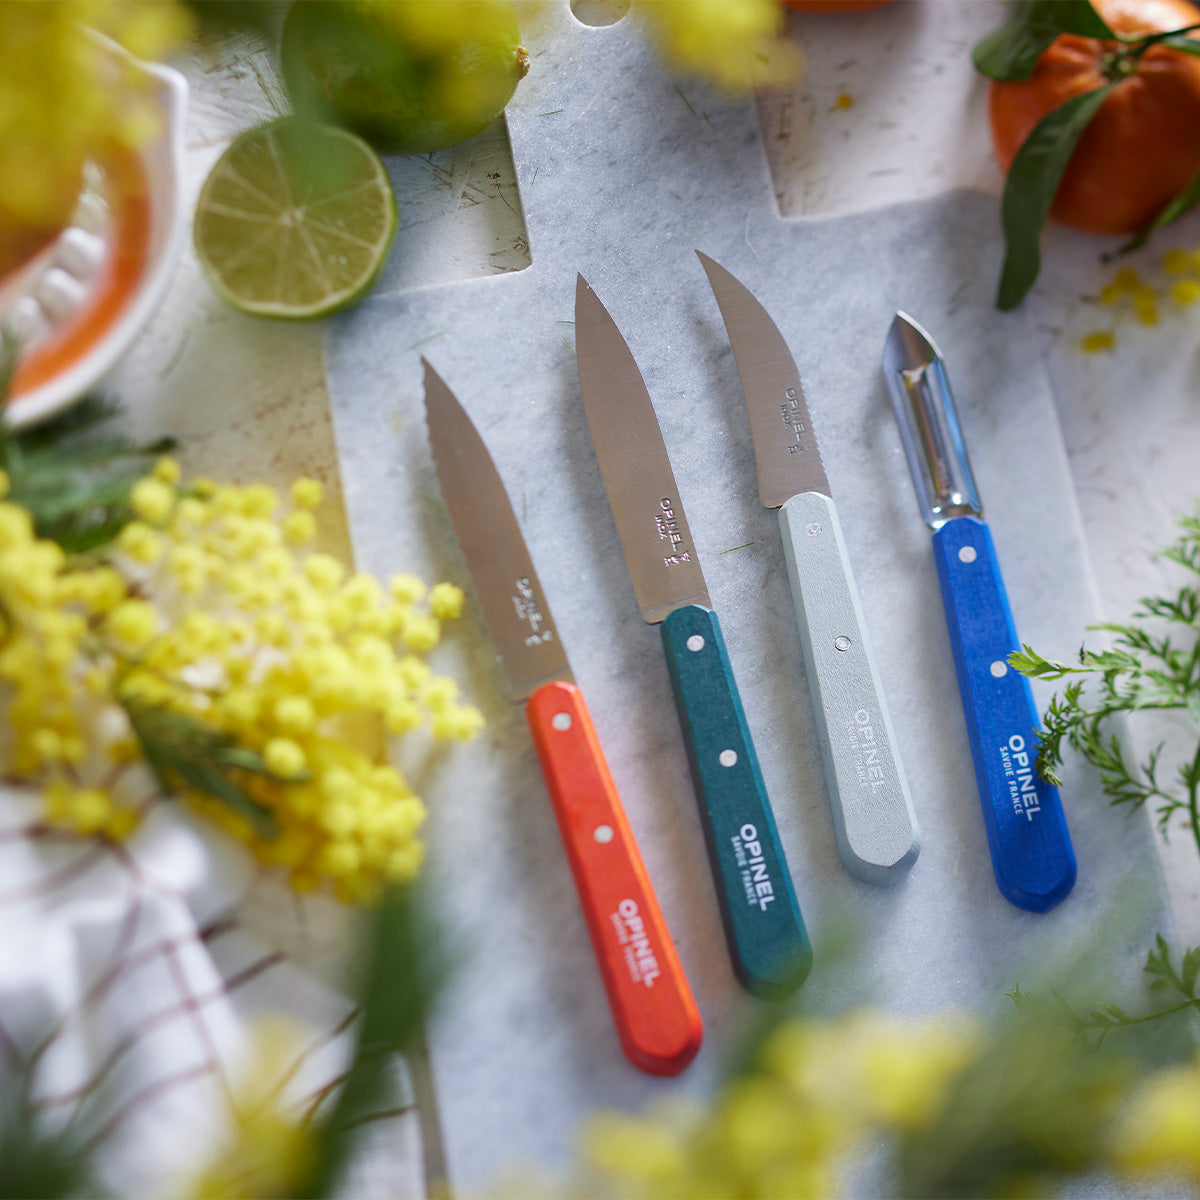 Opinel Kitchen Knife Set